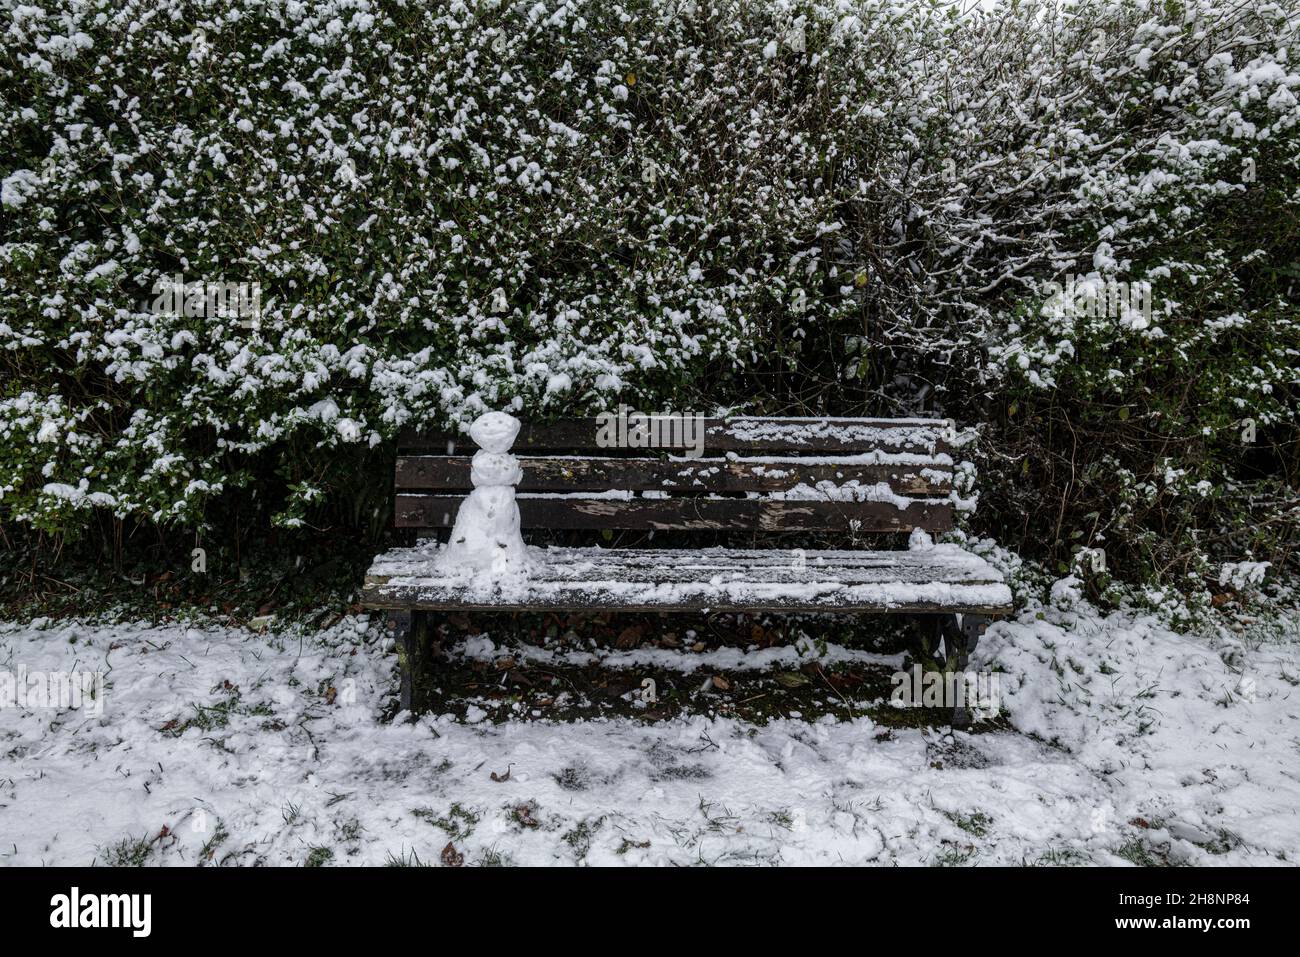 Ein Mini-Schneemann auf einer Parkbank, Brungerley Park, Clitheroe, Ribble Valley, Lancashire, VEREINIGTES KÖNIGREICH. Stockfoto